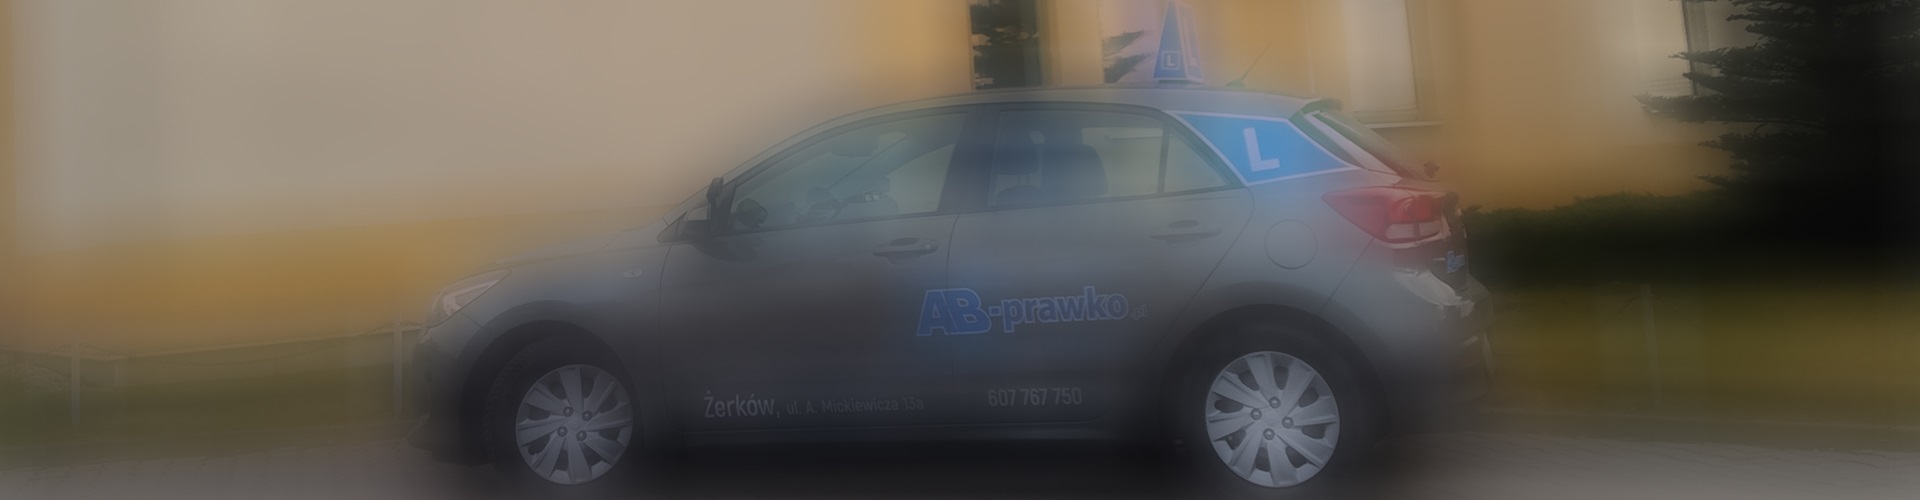 AB-Prawko